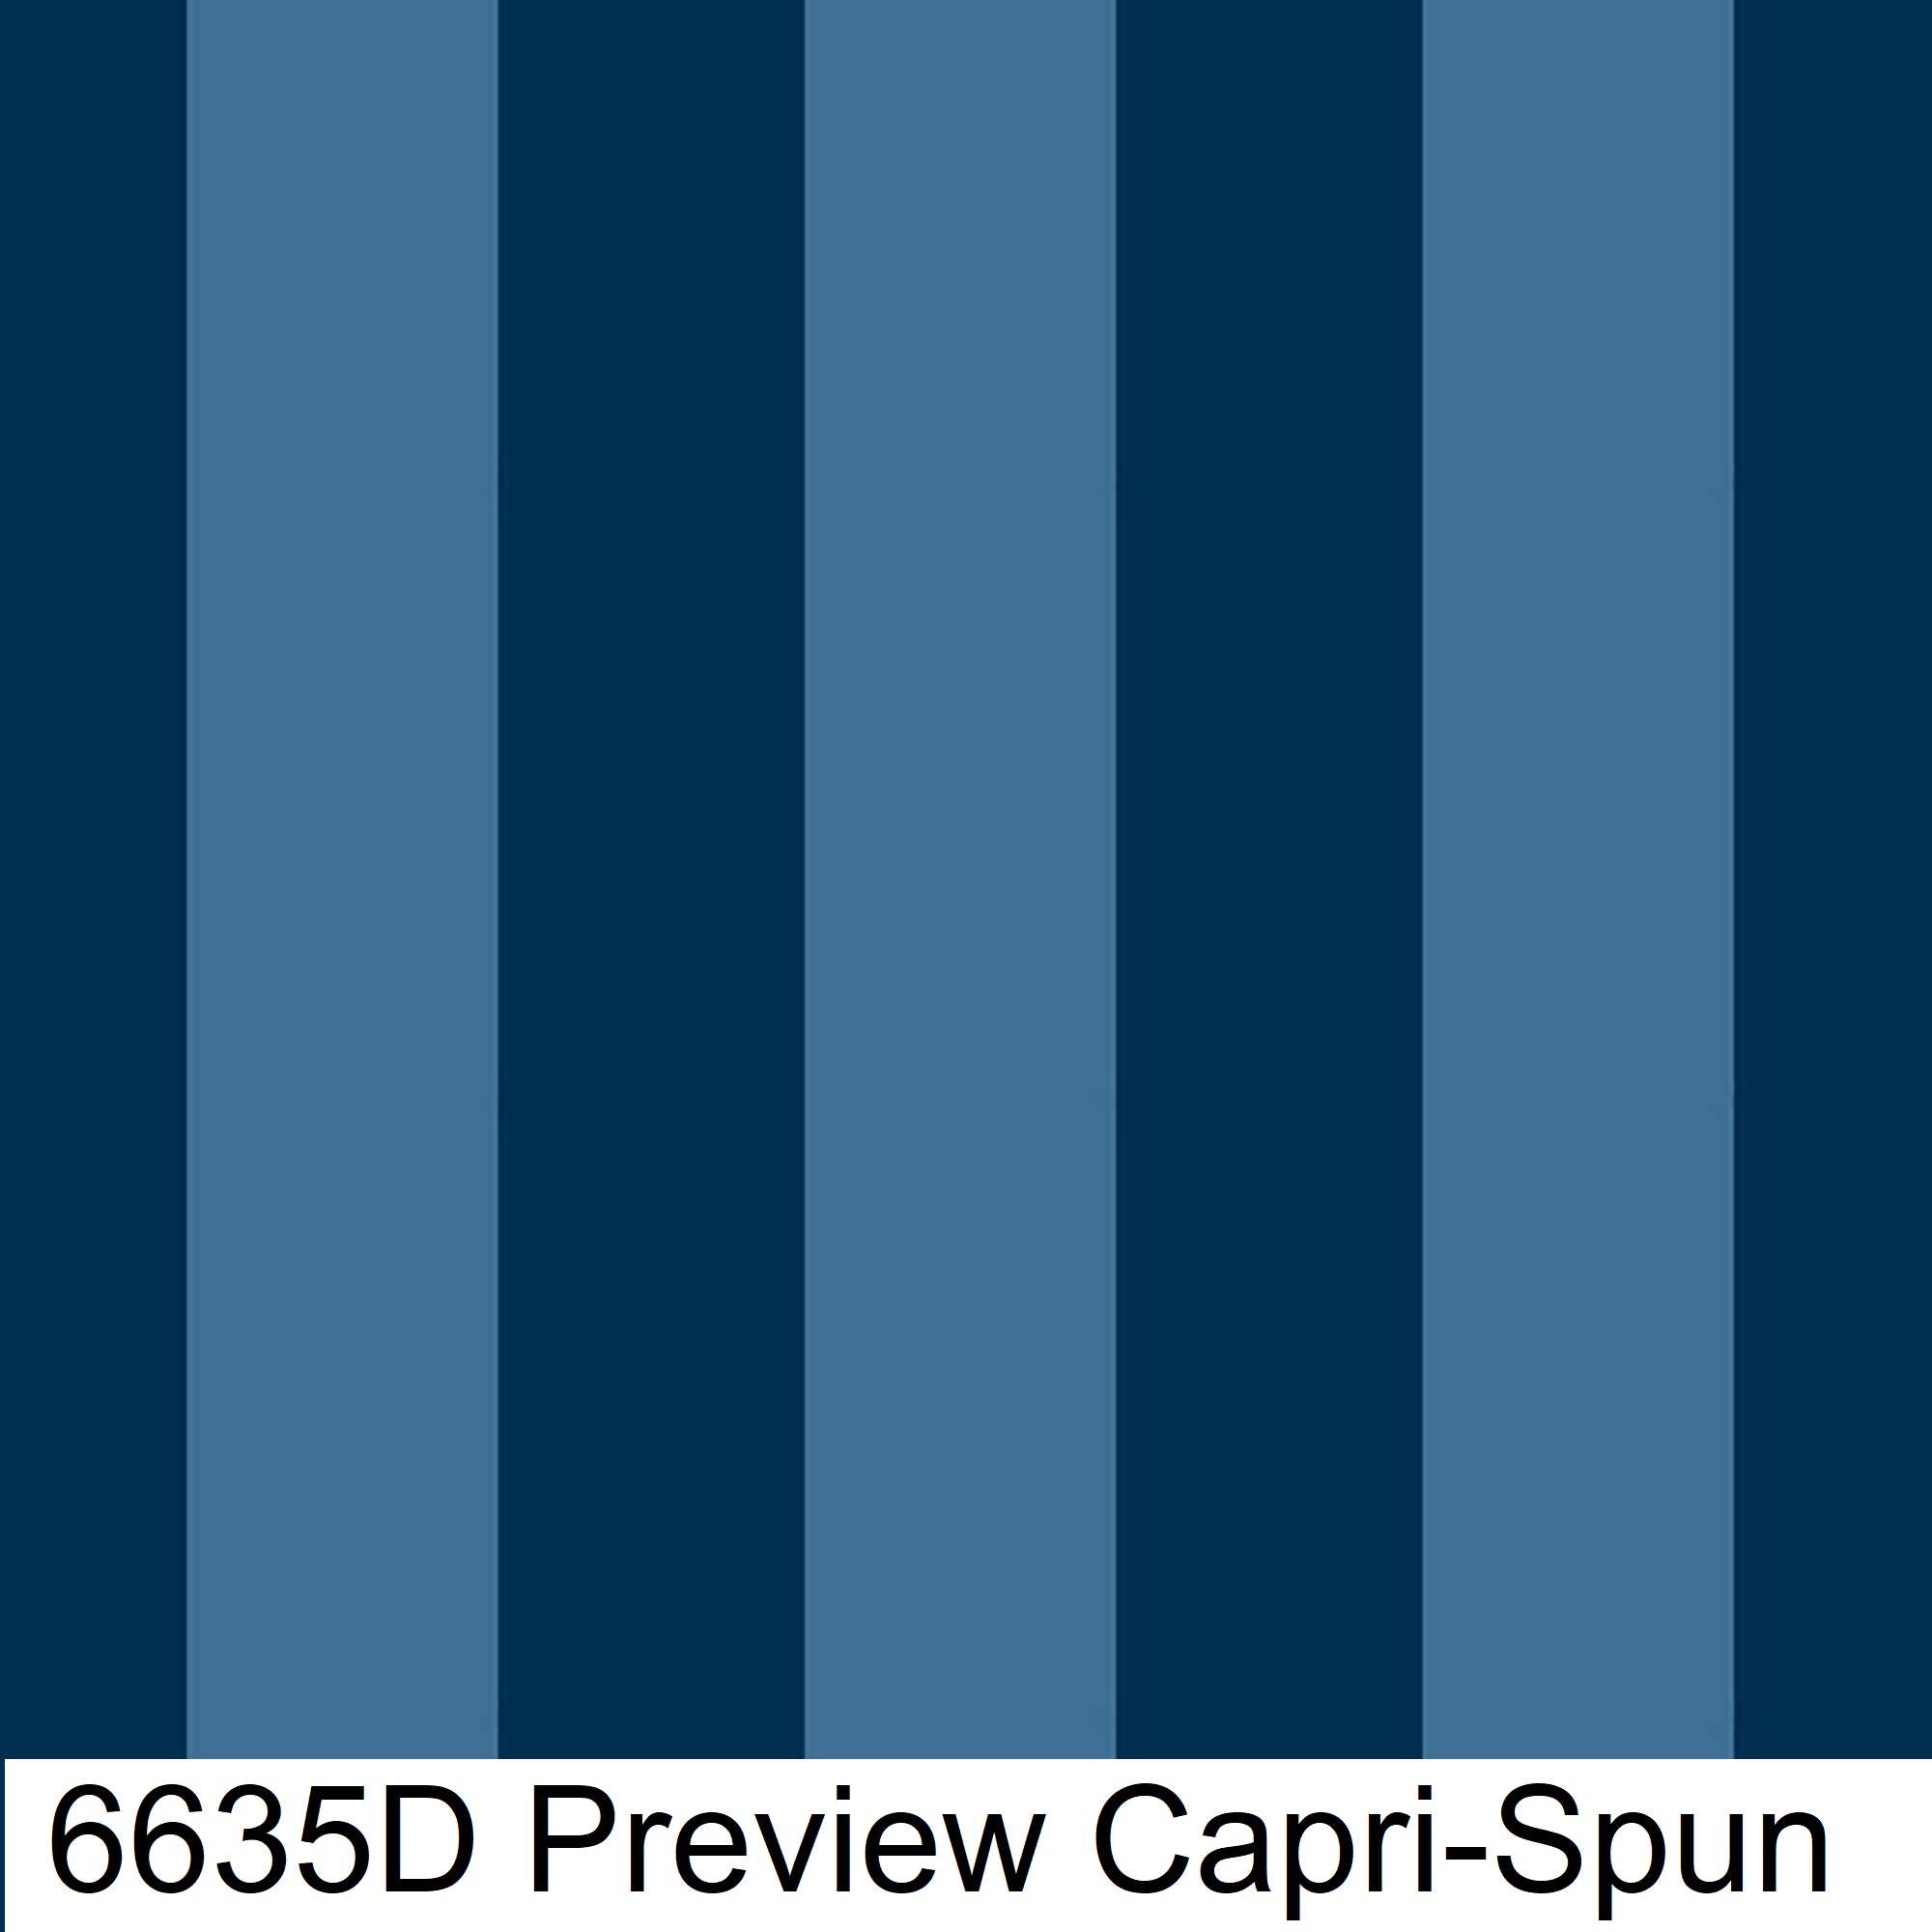 6635D Preview Capri-Spun